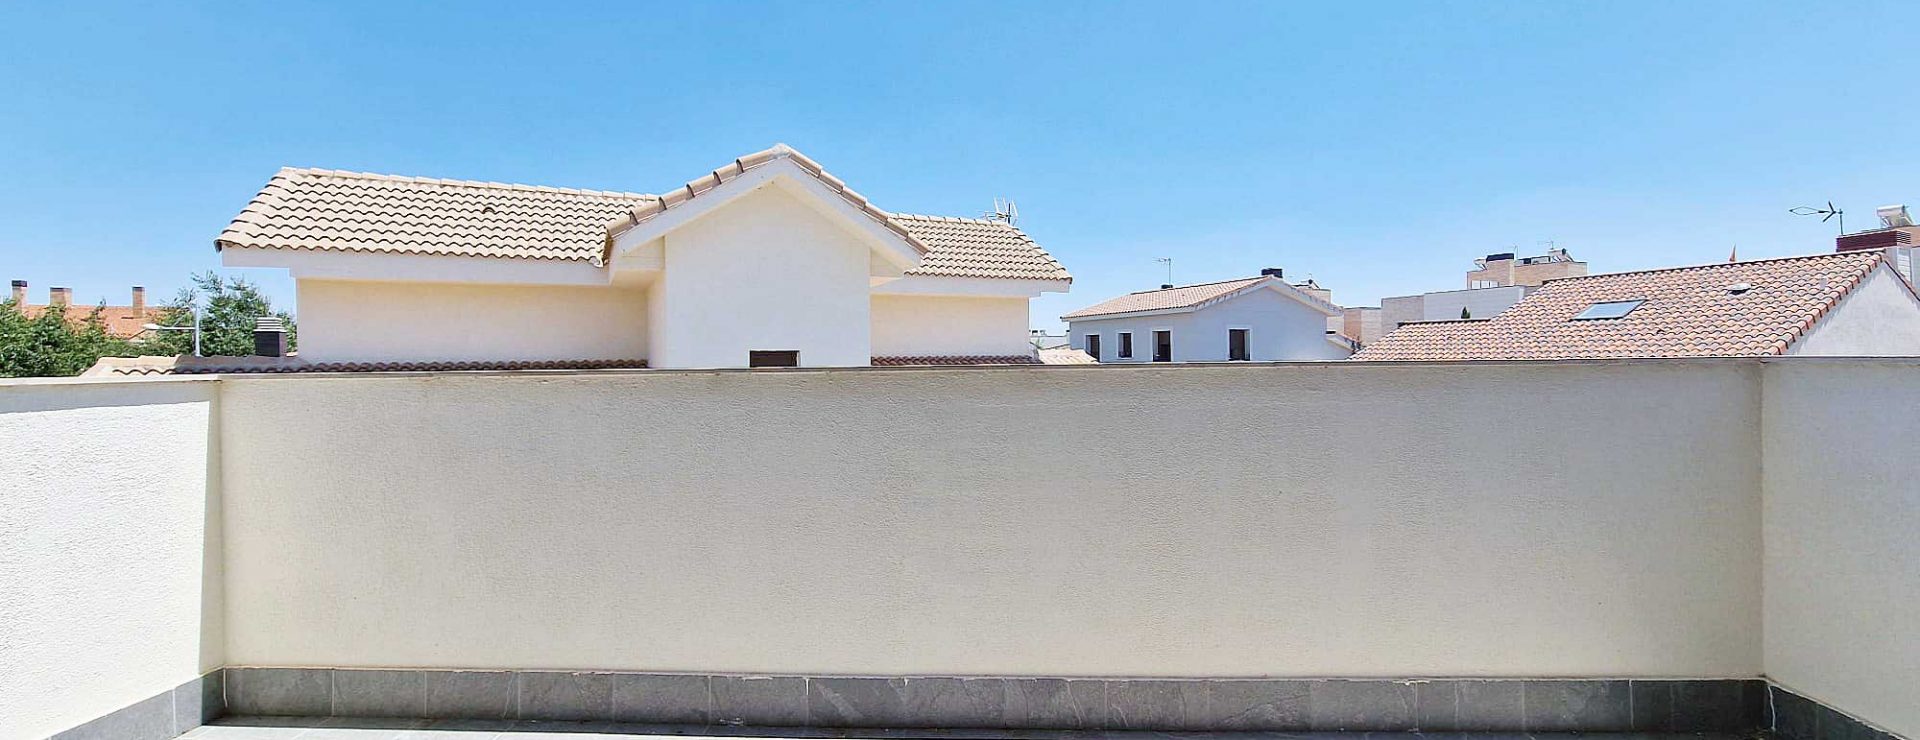 Alquiler de Habitación en Villanueva de la Cañada | DR22A123